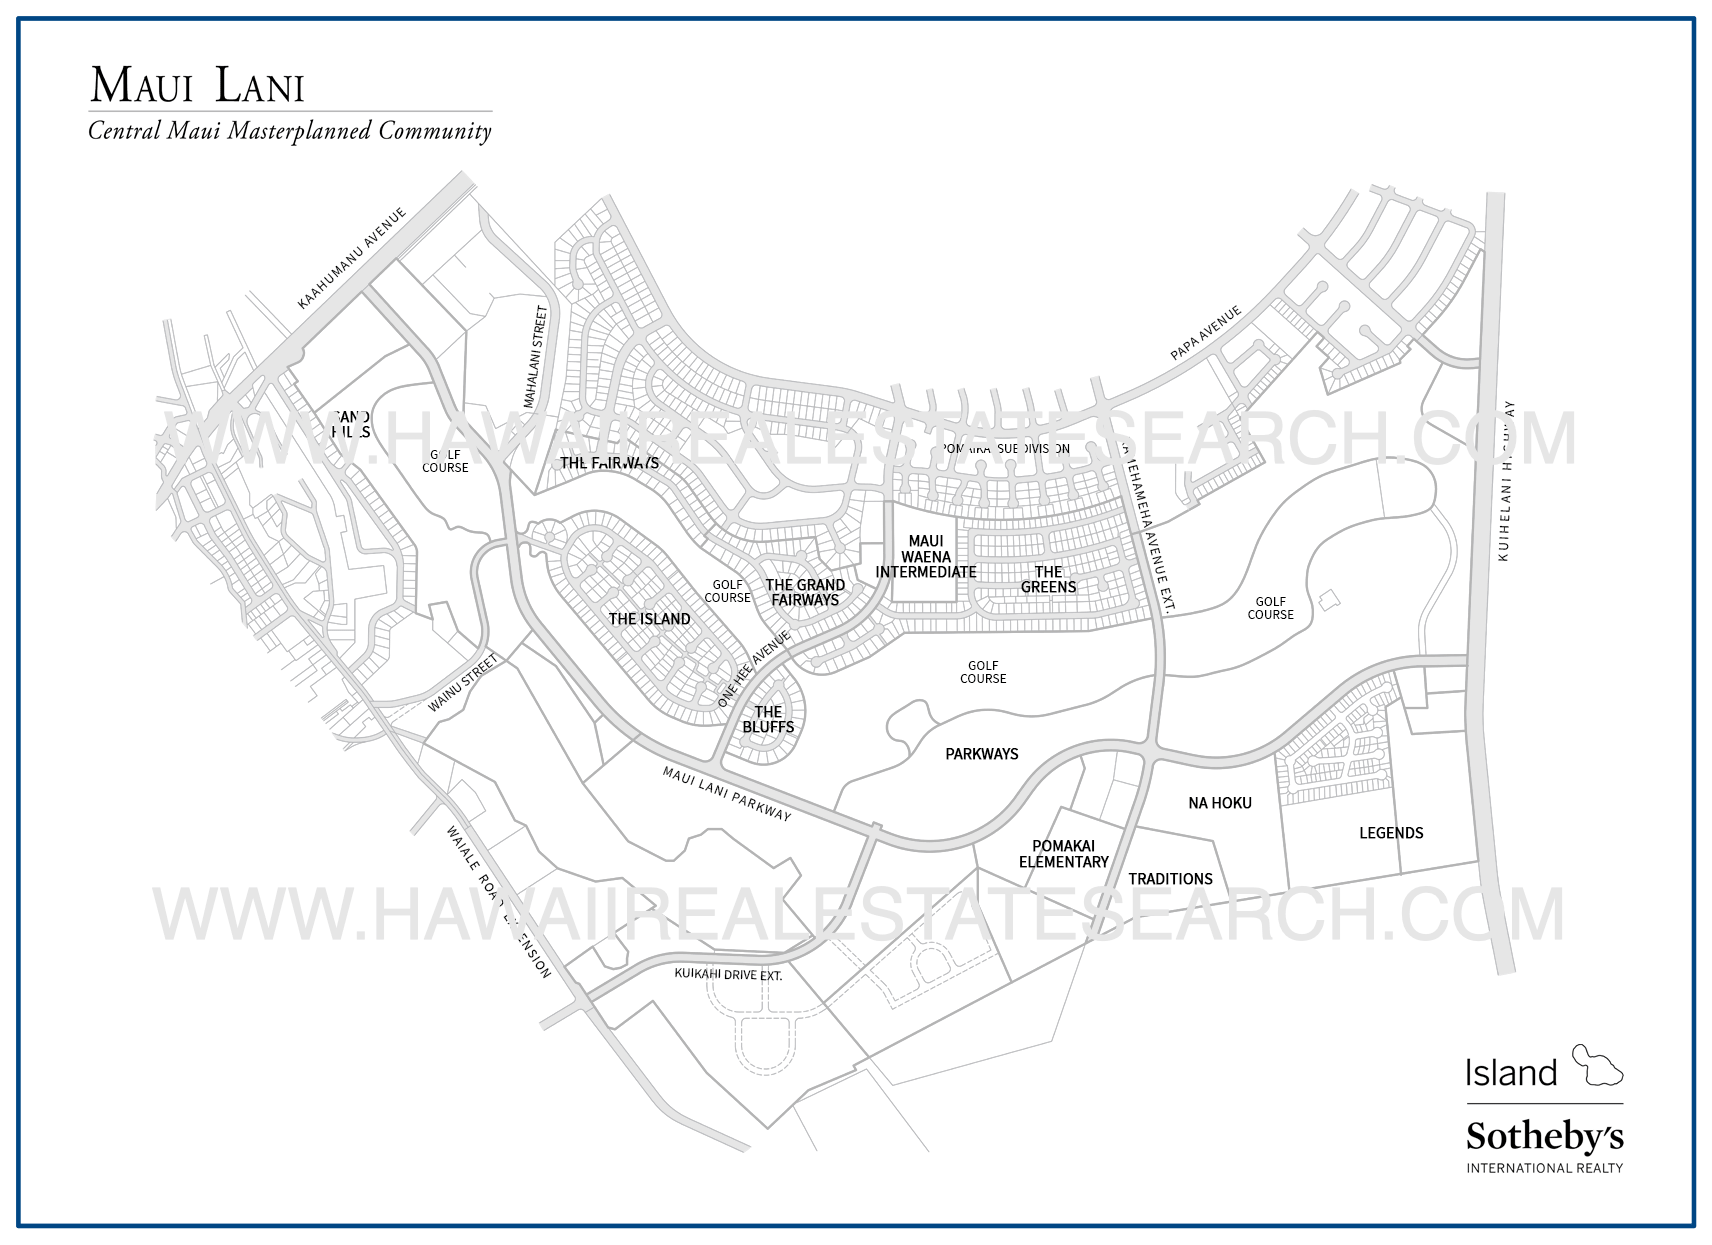 Map of Maui Lani Neighborhood